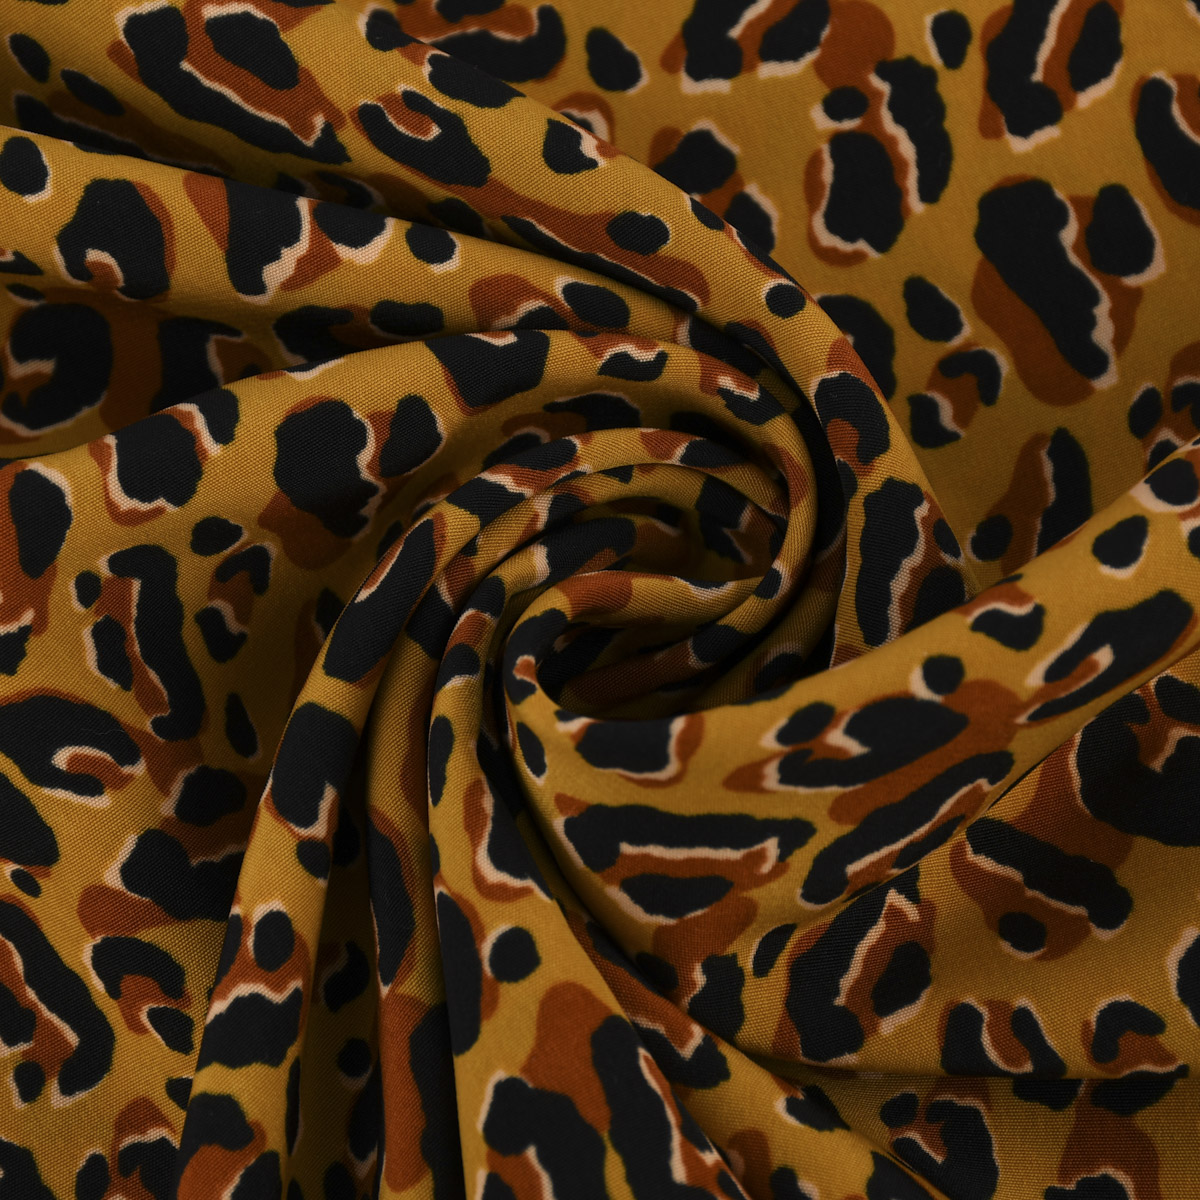 Bekleidungsstoff Pearl Peach Leoparden Muster ocker schwarz braun 1,44m  Breite